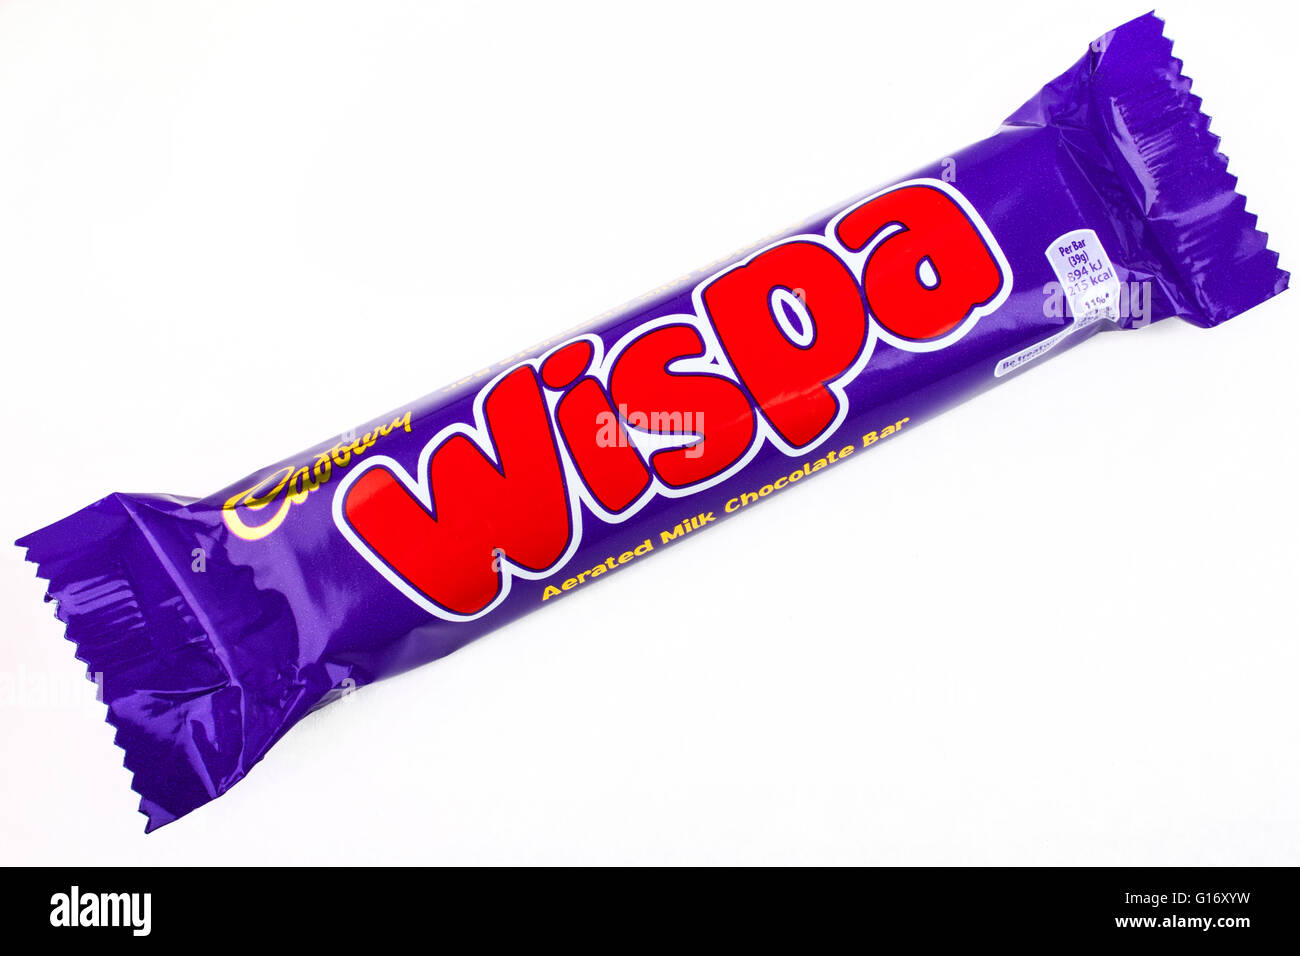 Londres, UK - 6 mai 2016 : une emprise Wispa barre de chocolat fabriqués par Cadbury, photographié sur un arrière-plan uni, blanc sur 6t Banque D'Images